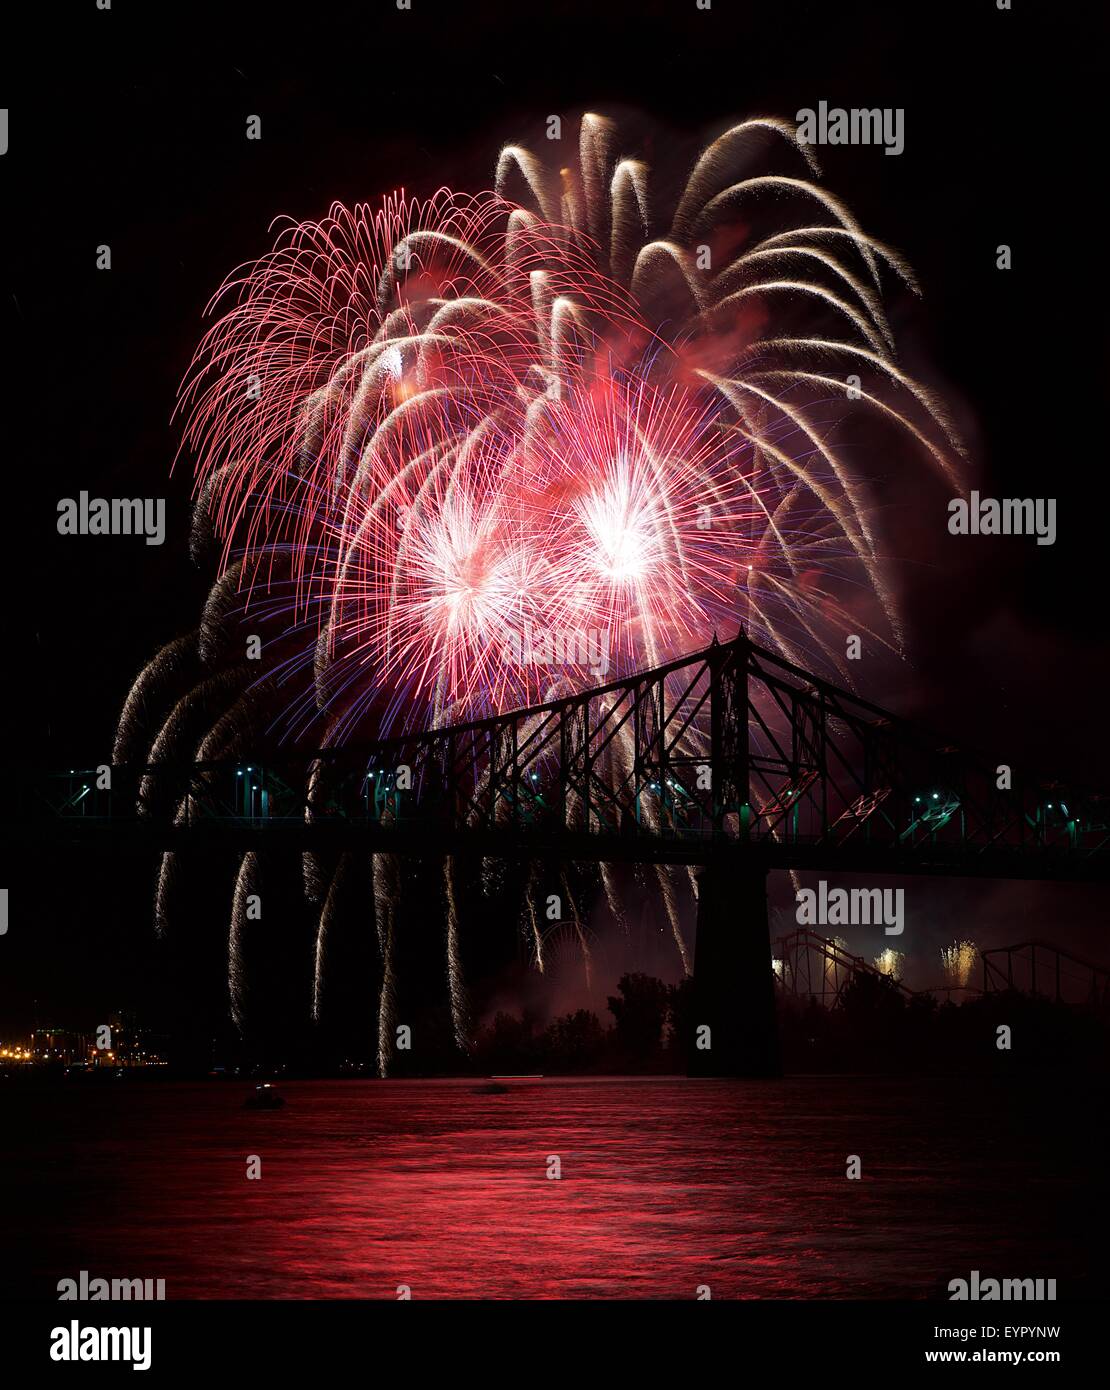 D'artifice rouge exploser à Montréal avec pont silhoutte of mountain range at sunset dans ciel noir,Montréal festival Fireworks Fireworks, exploser, Nouvel An, fi Banque D'Images